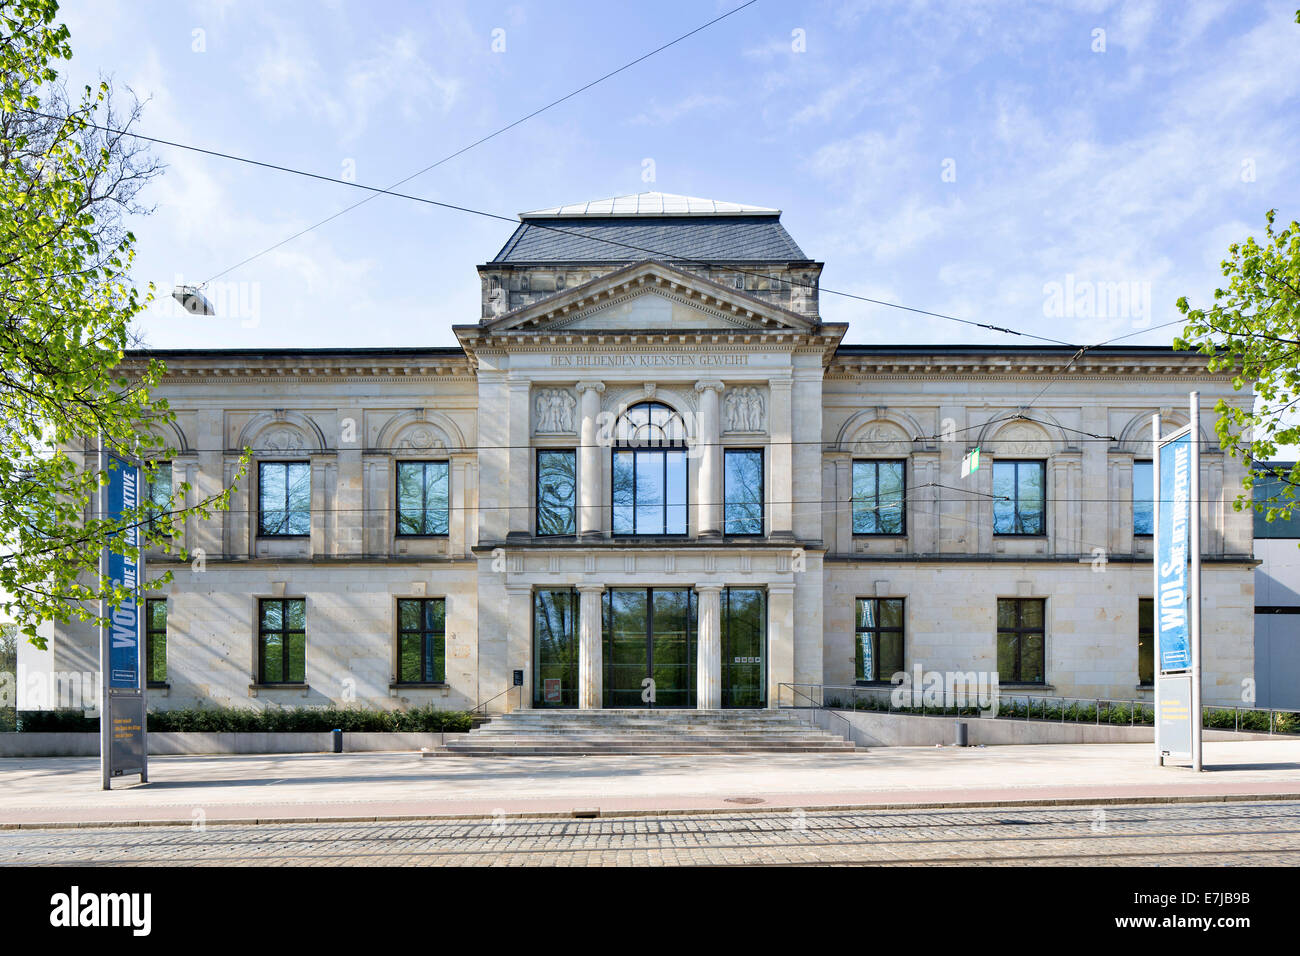 Galerie d'art Kunsthalle de Brême, Brême, Allemagne Banque D'Images